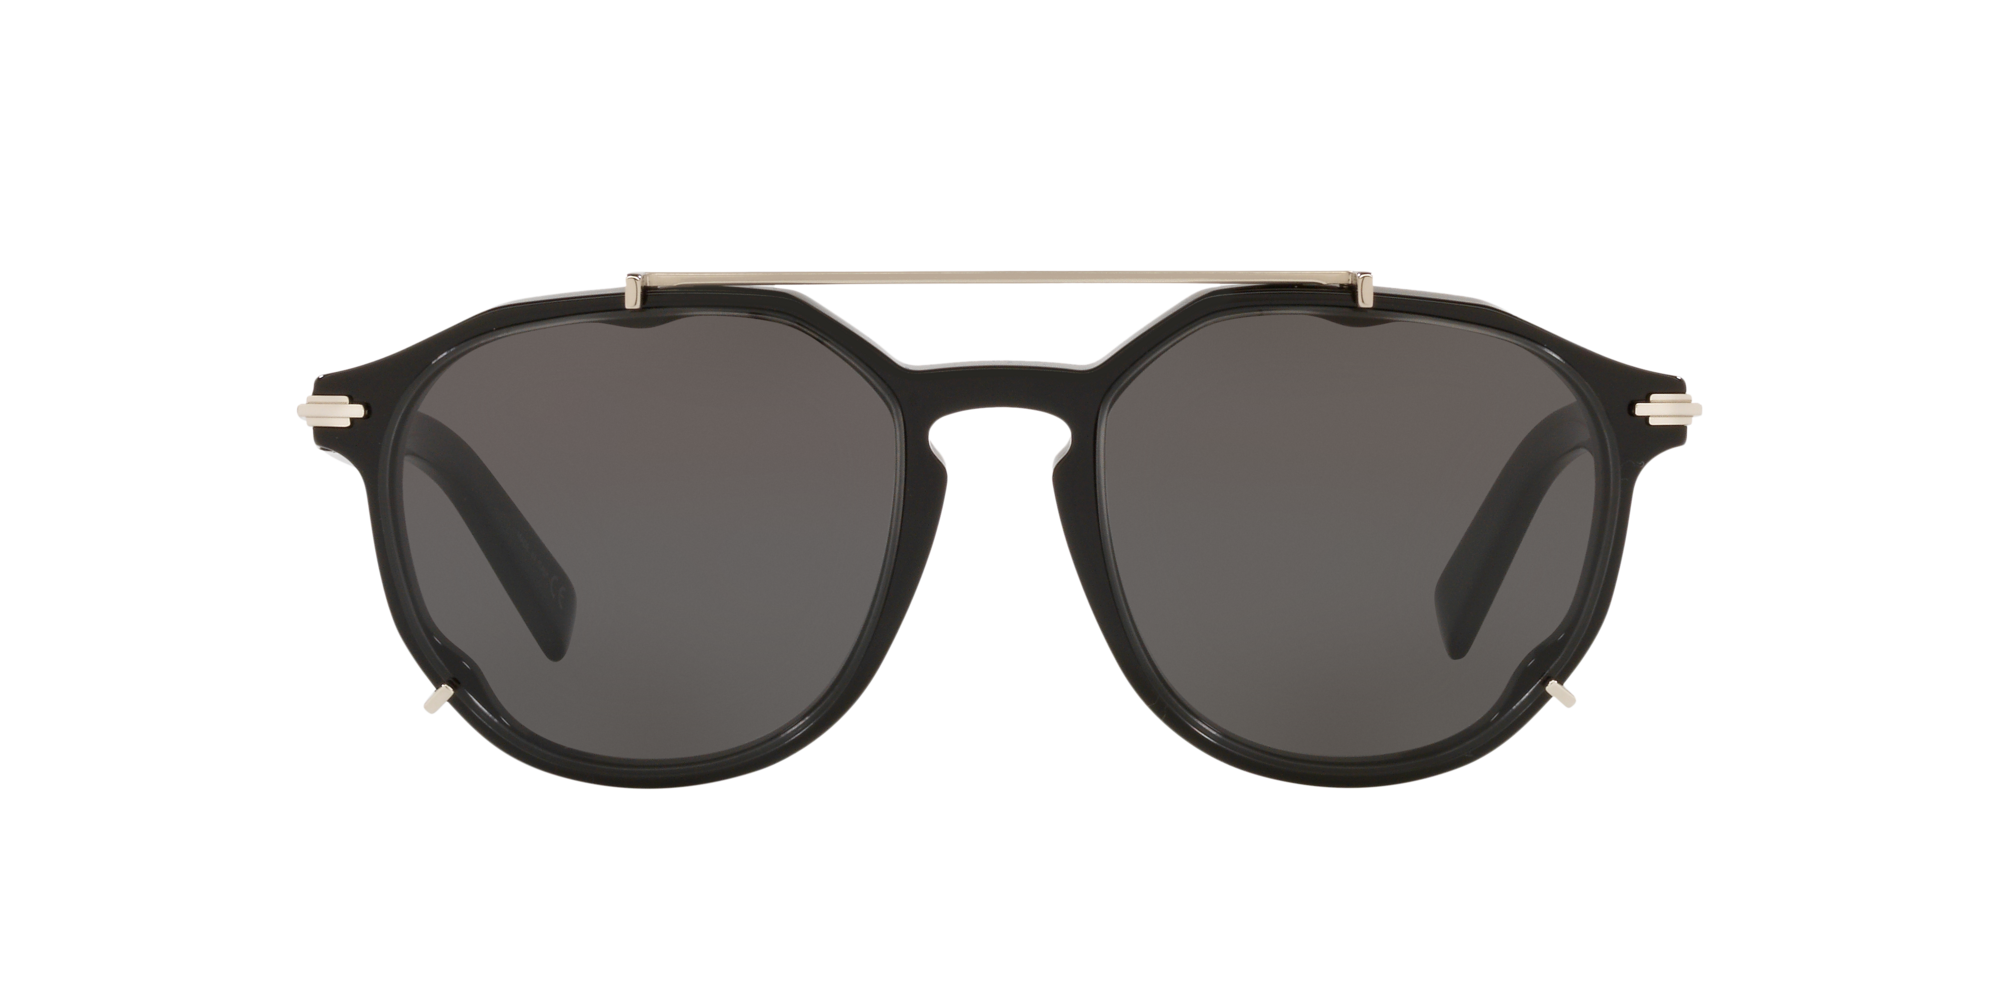 34 Best Sunglasses for Men 2022